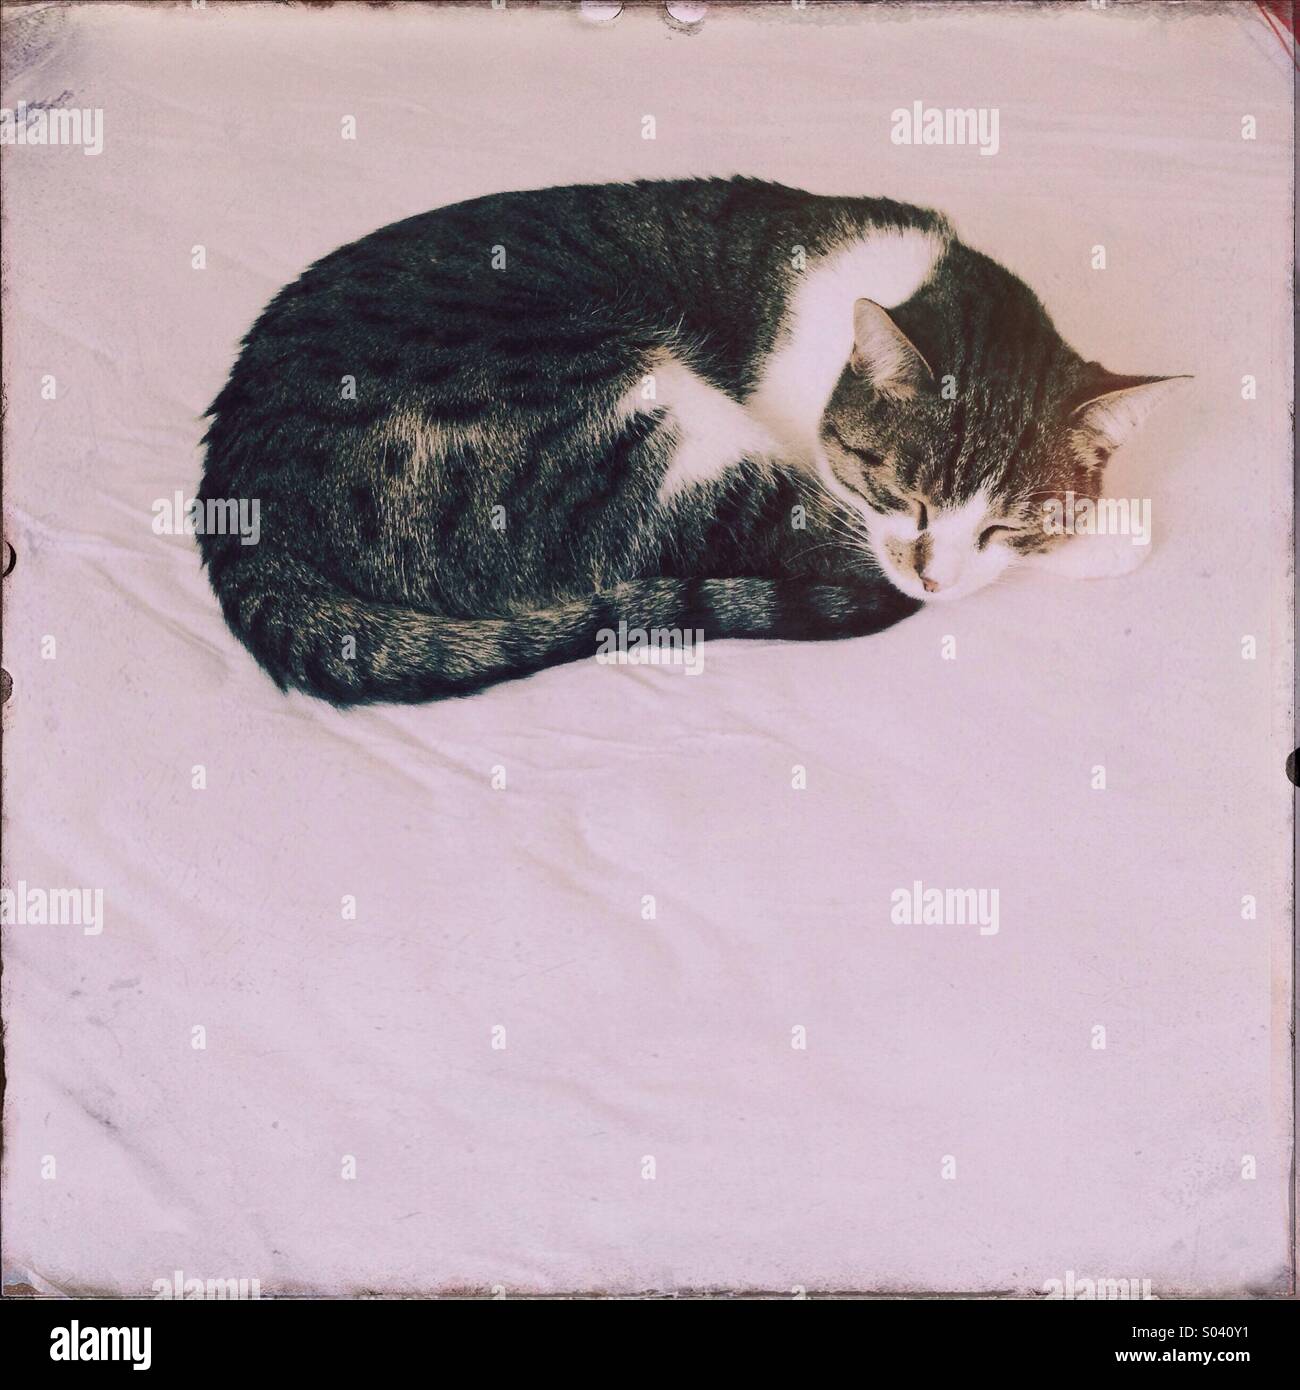 Un jeune chat est vu dormir sur un lit. Banque D'Images